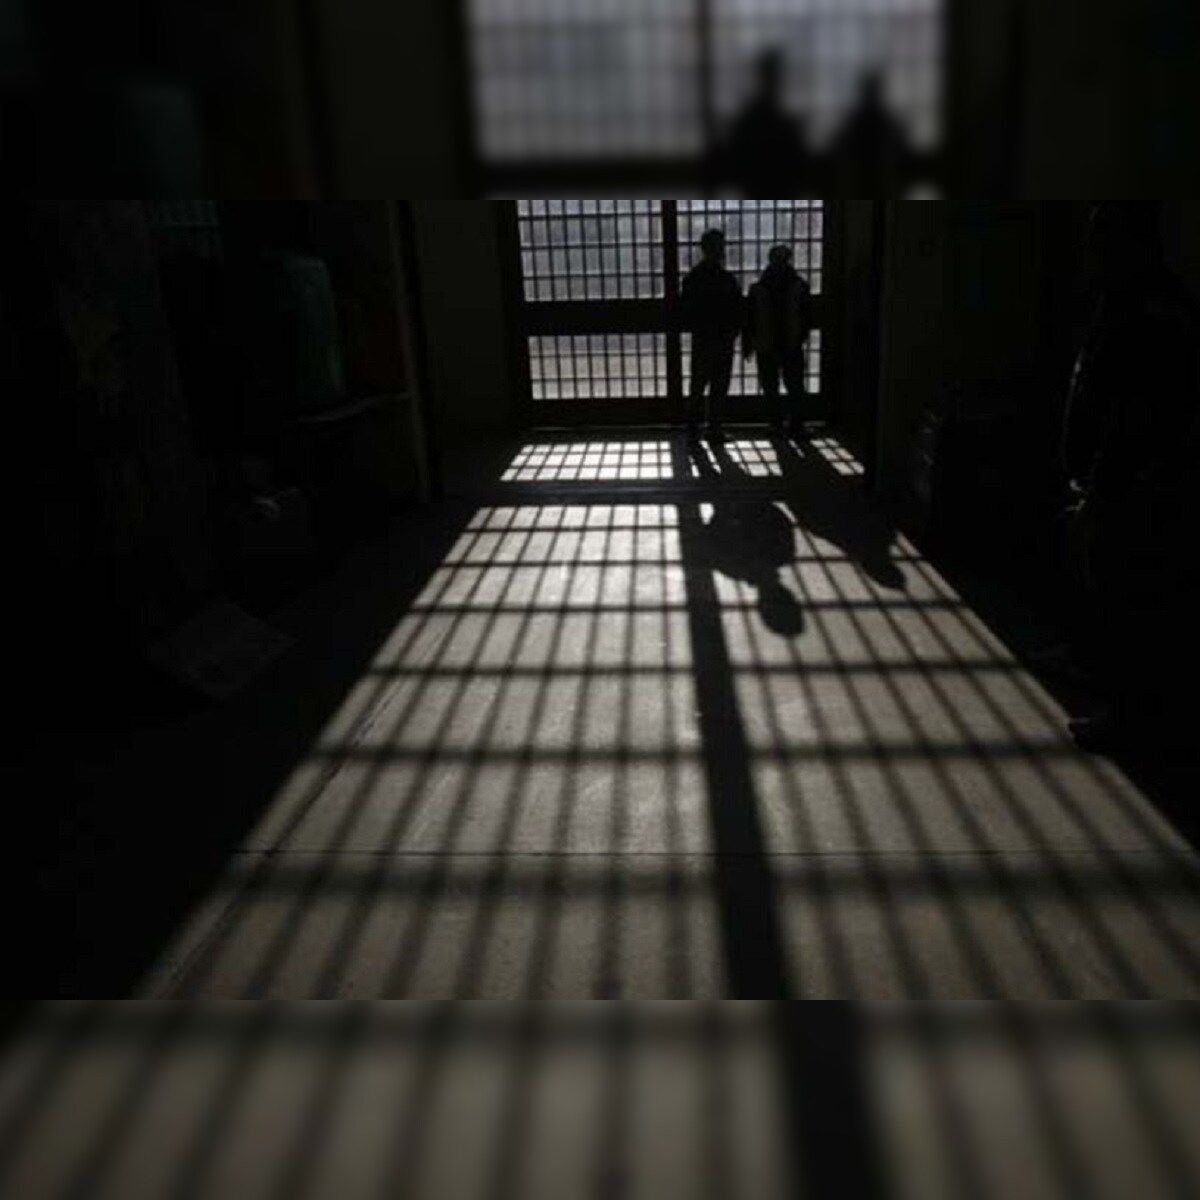  छापेमारी: दिल्ली की तिहाड़, मंडोली और रोहिणी जेल में,115 मोबाइल कैदियों के पास मिले 